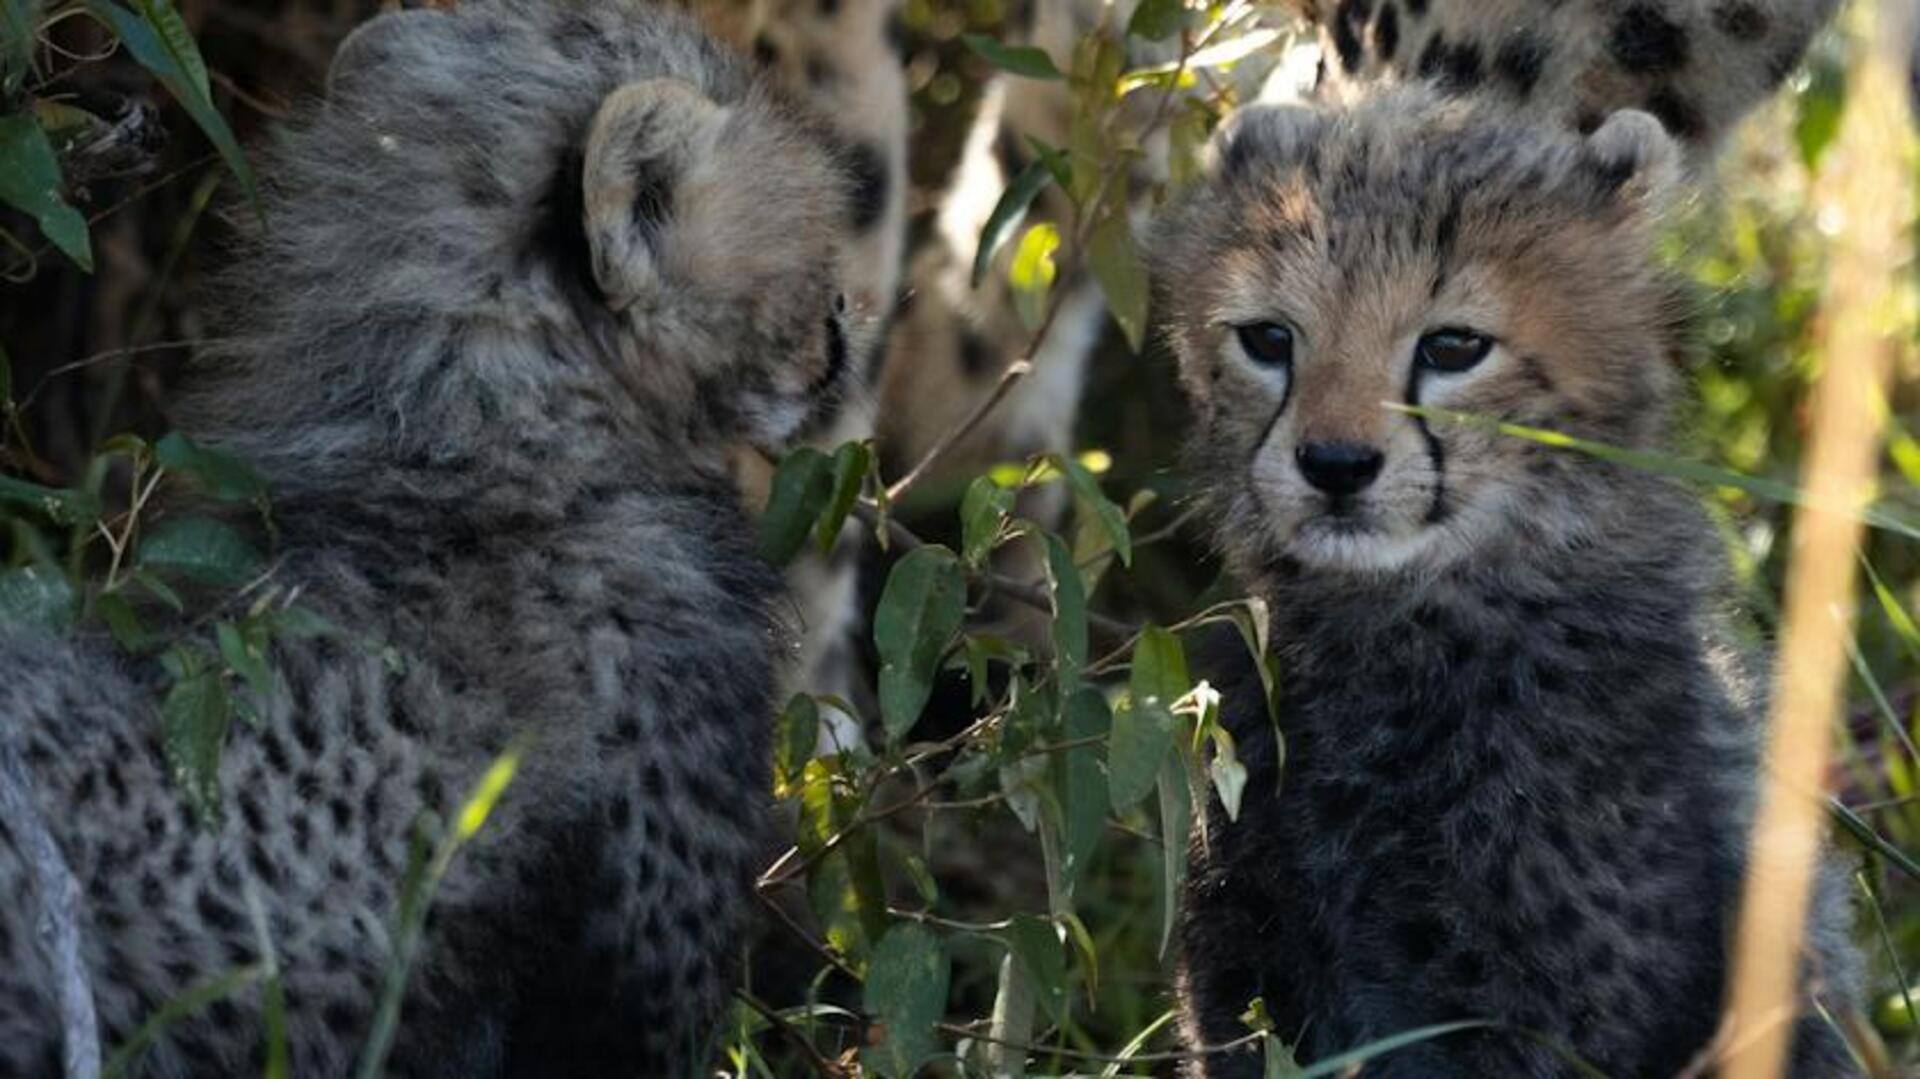 Namibian cheetah Jwala gives birth to 3 cubs at Kuno